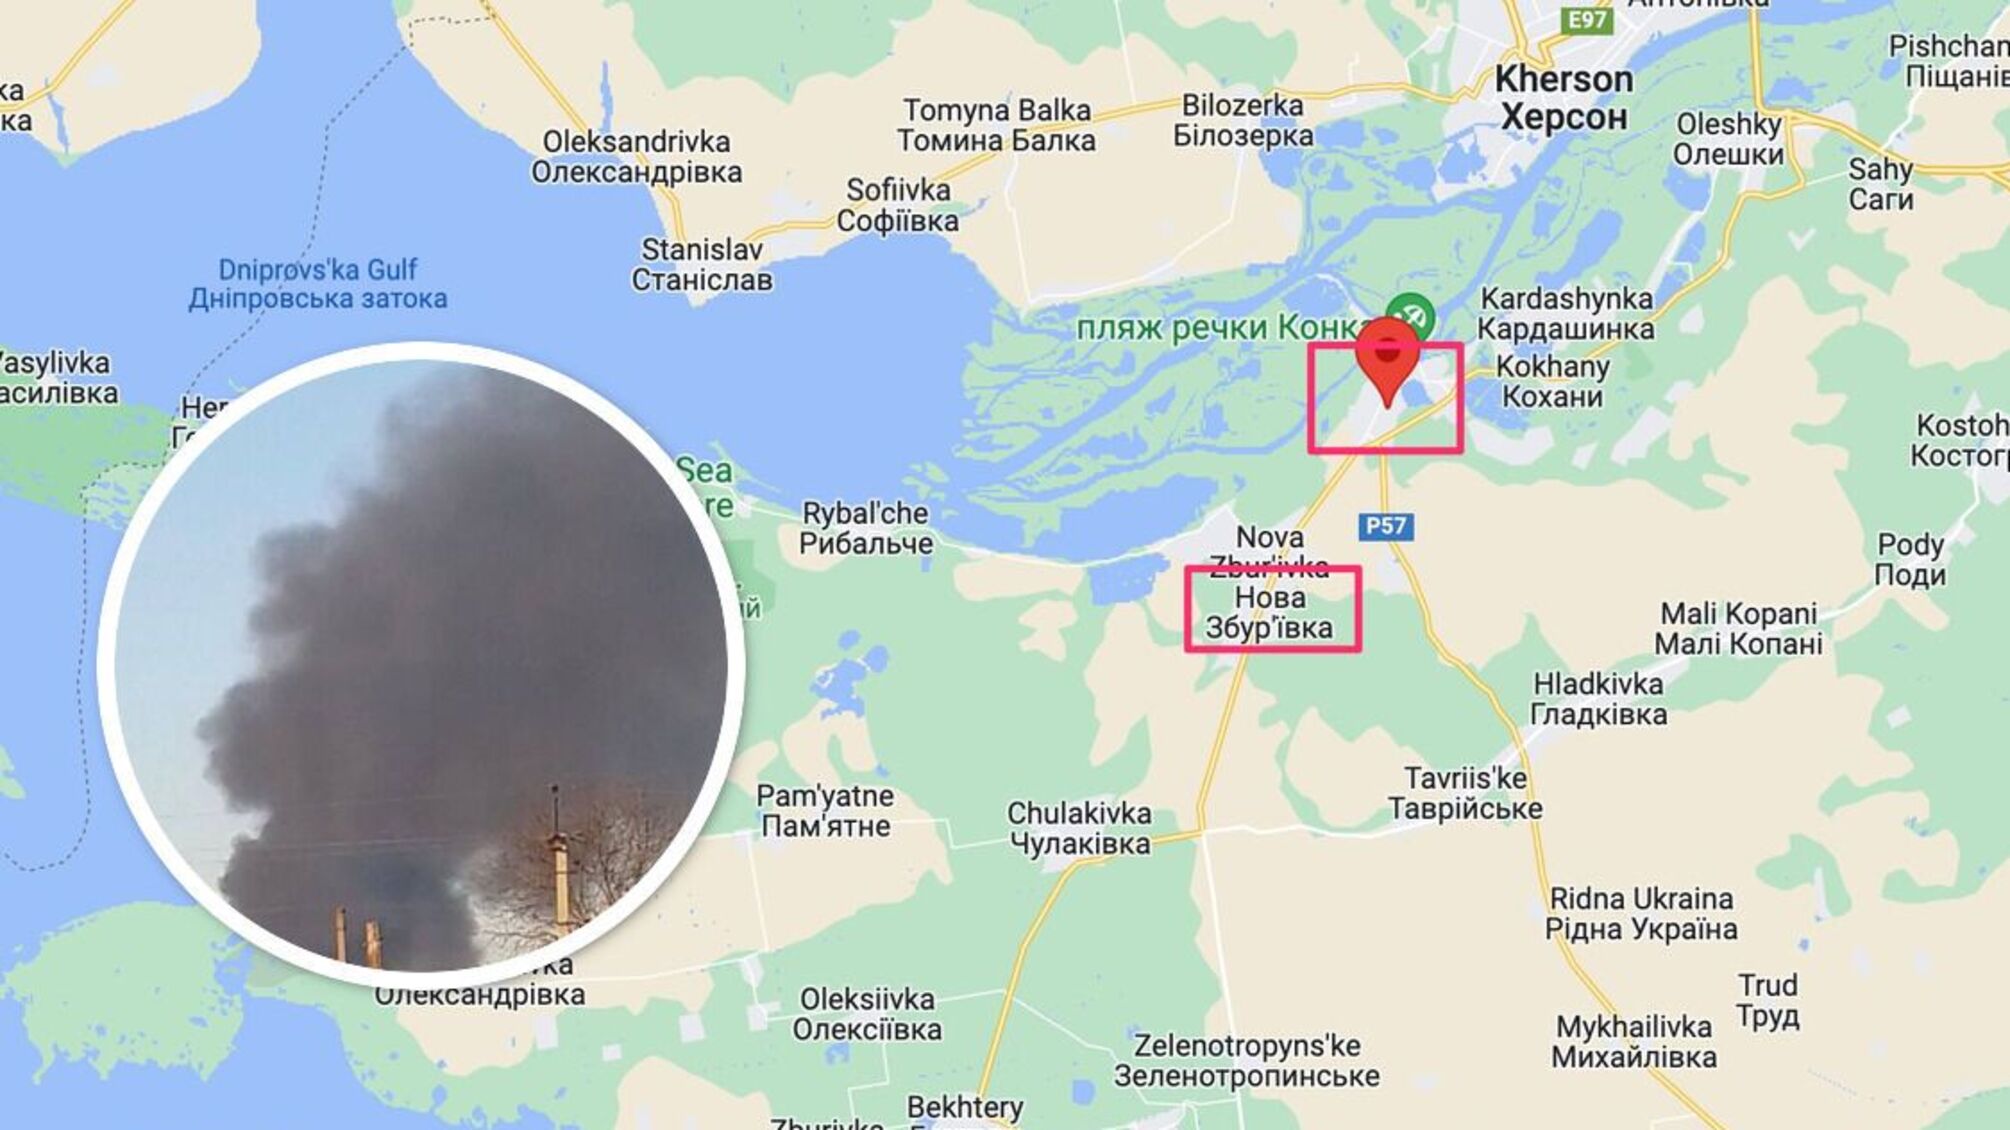 Голая Пристань в огне: дымит и детонирует вражеский состав боеприпасов (фото, видео)